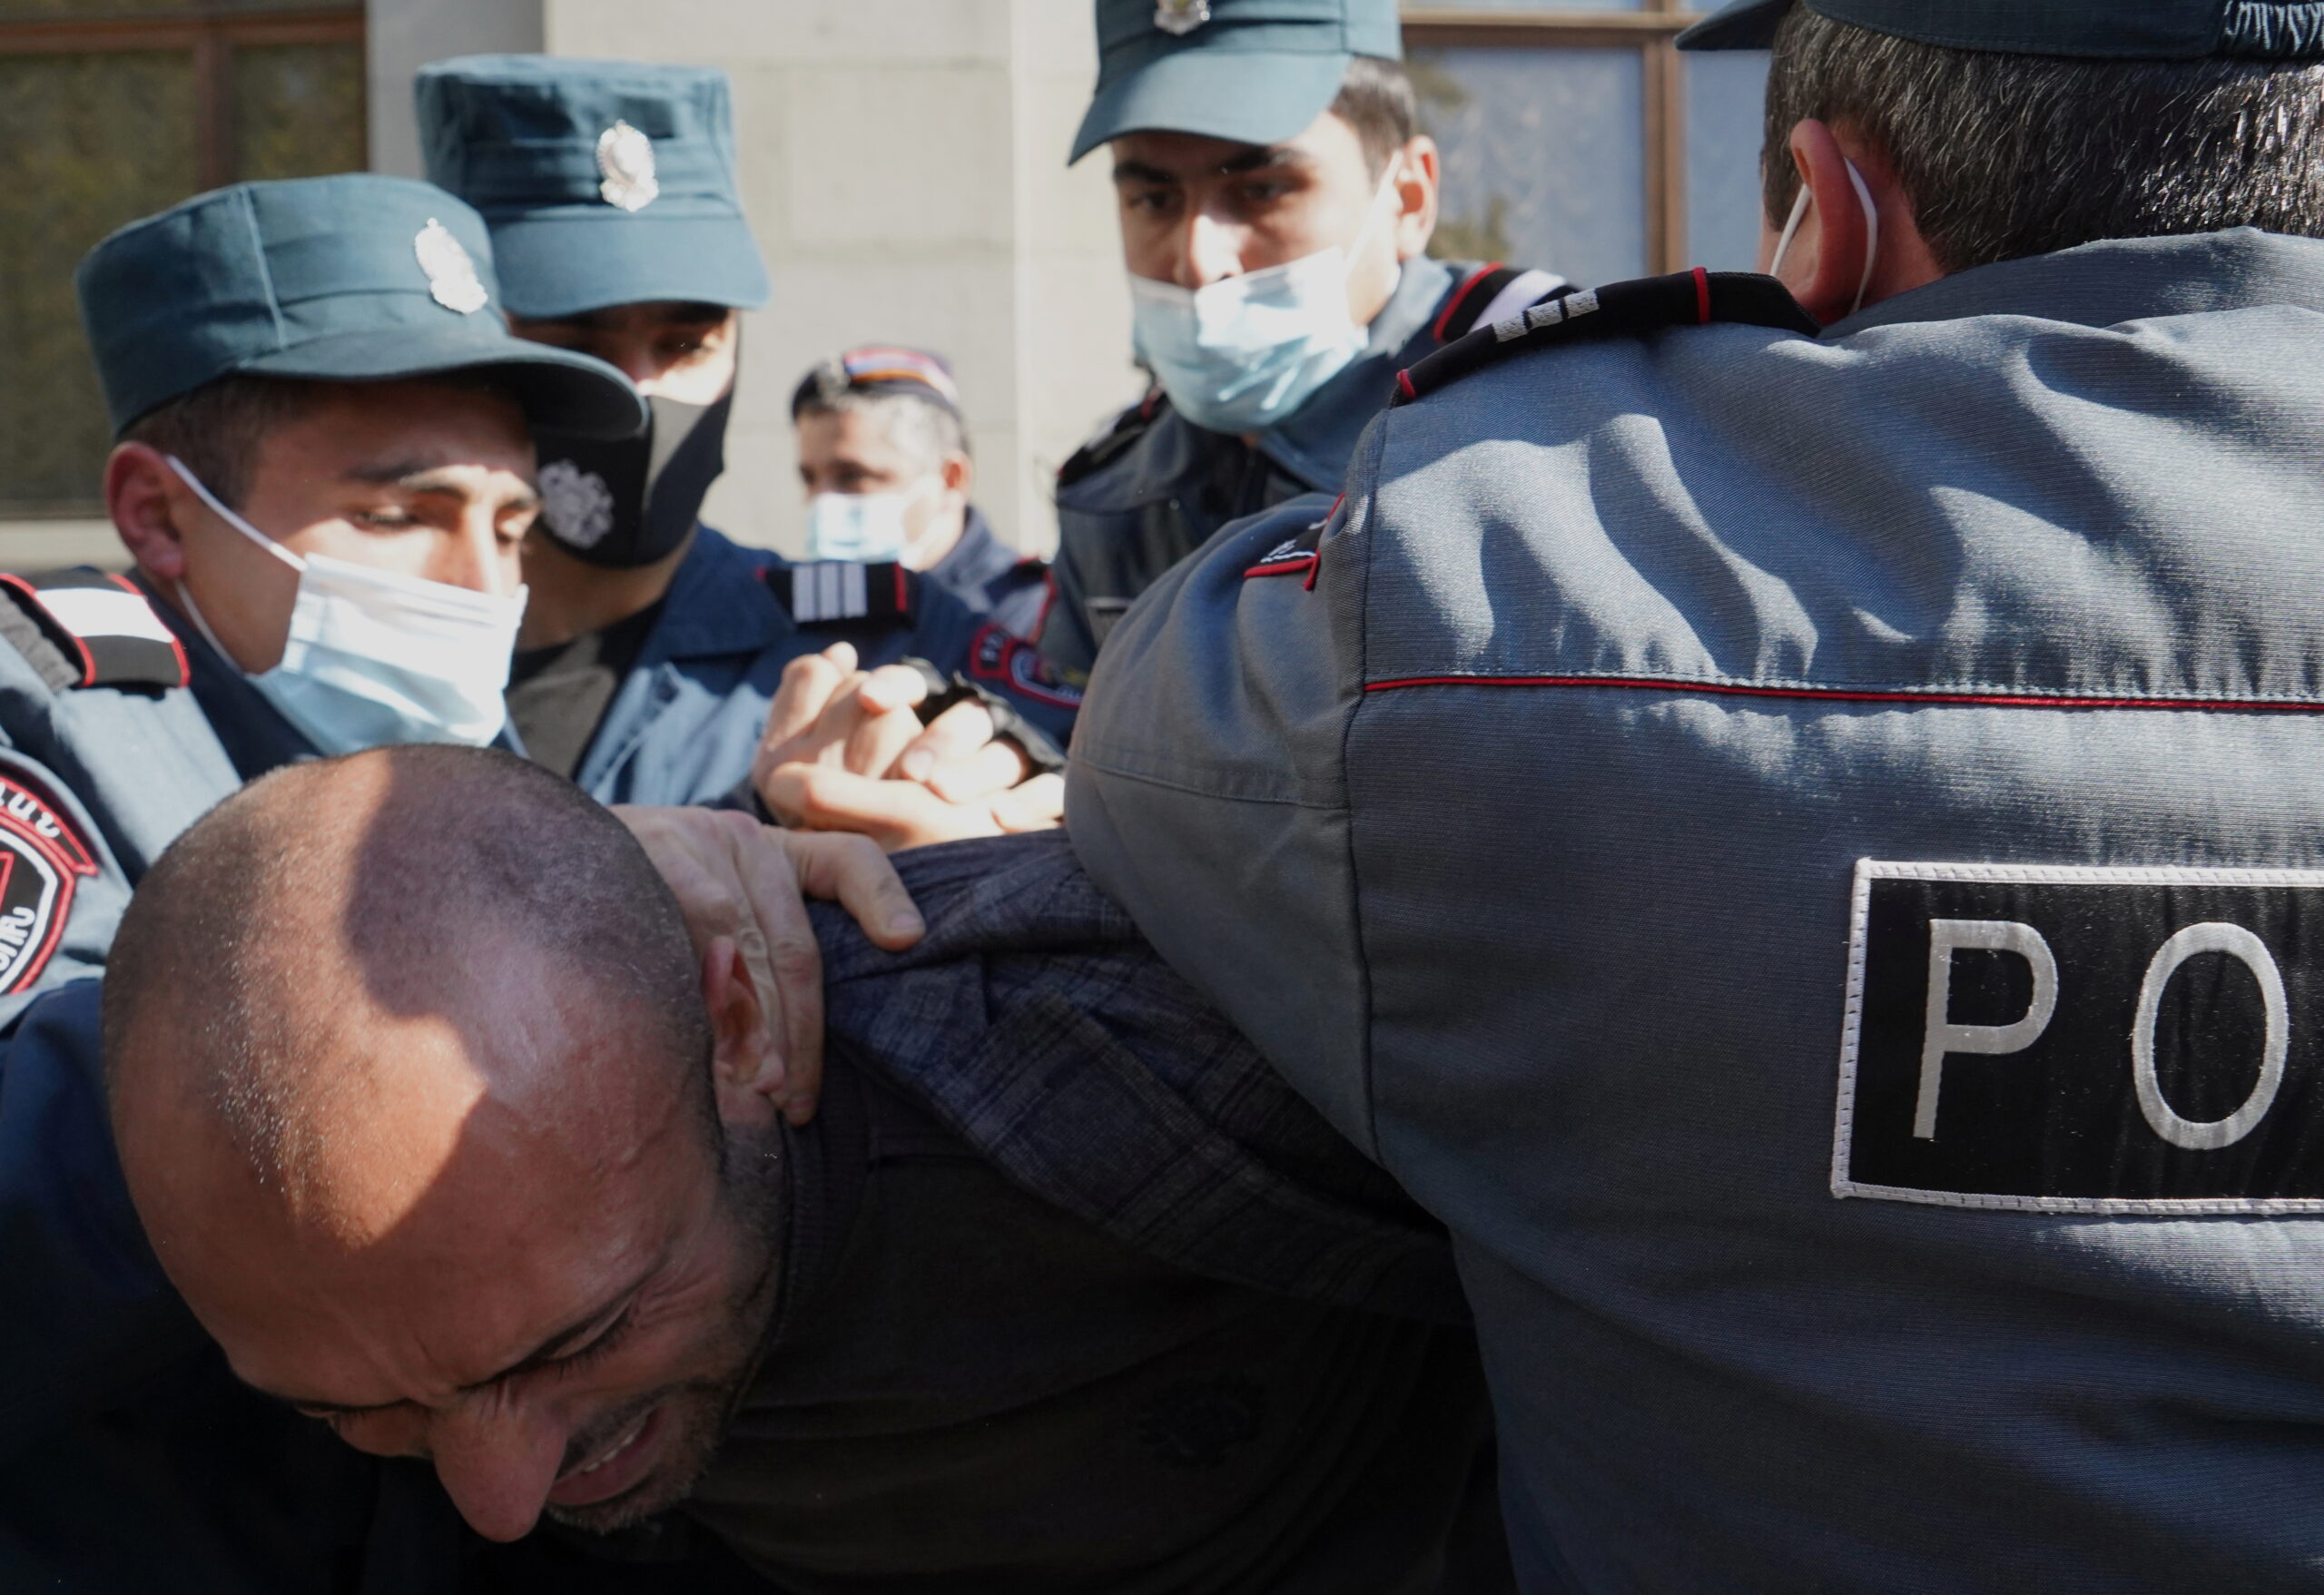 Некоторых участников задерживали довольно жестко. Фото REUTERS/Artem Mikryukov/Scanpix/Leta